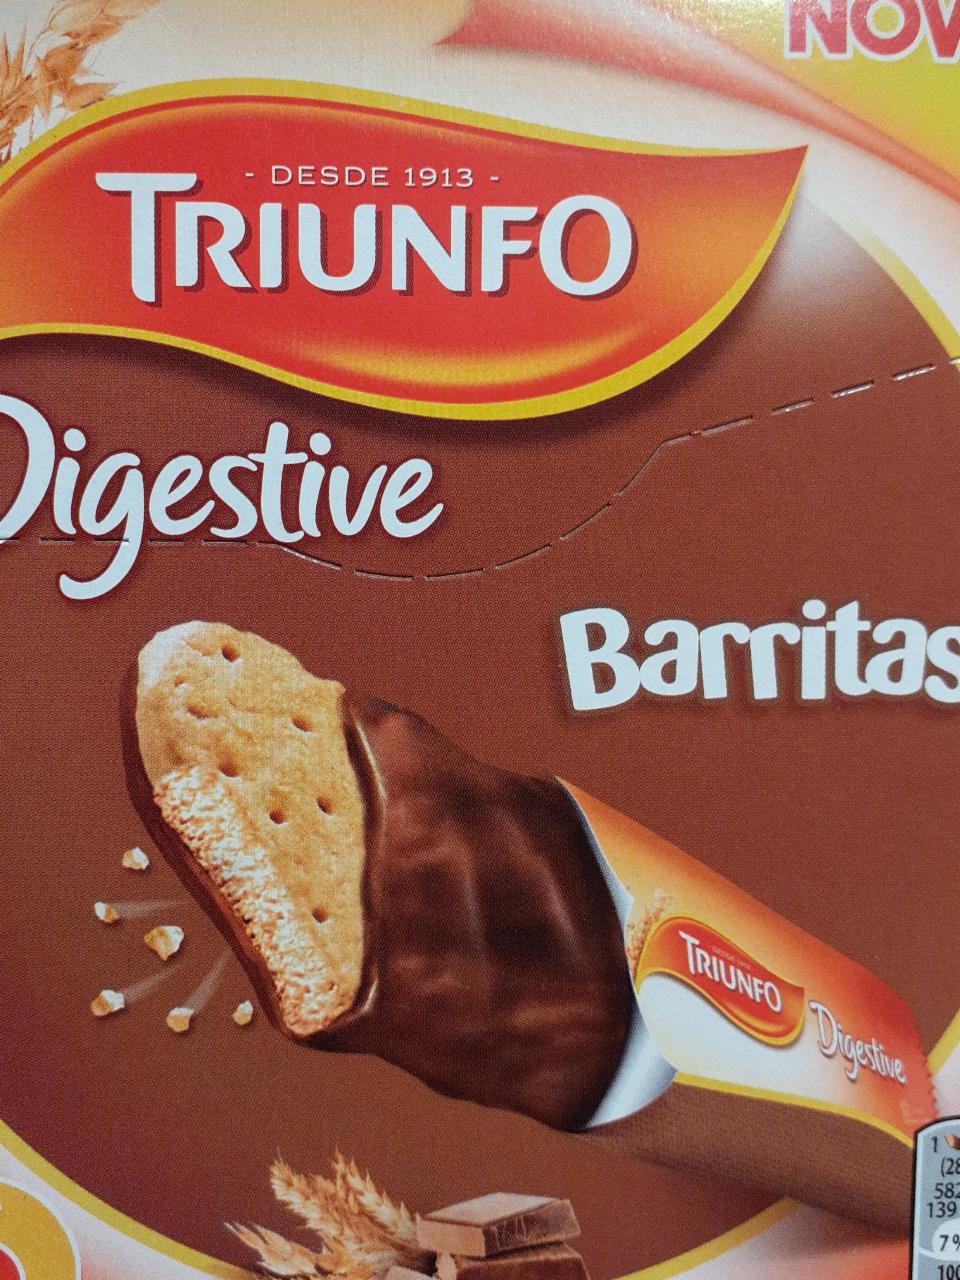 Fotografie - Triunfo Novo Digestive Barritas